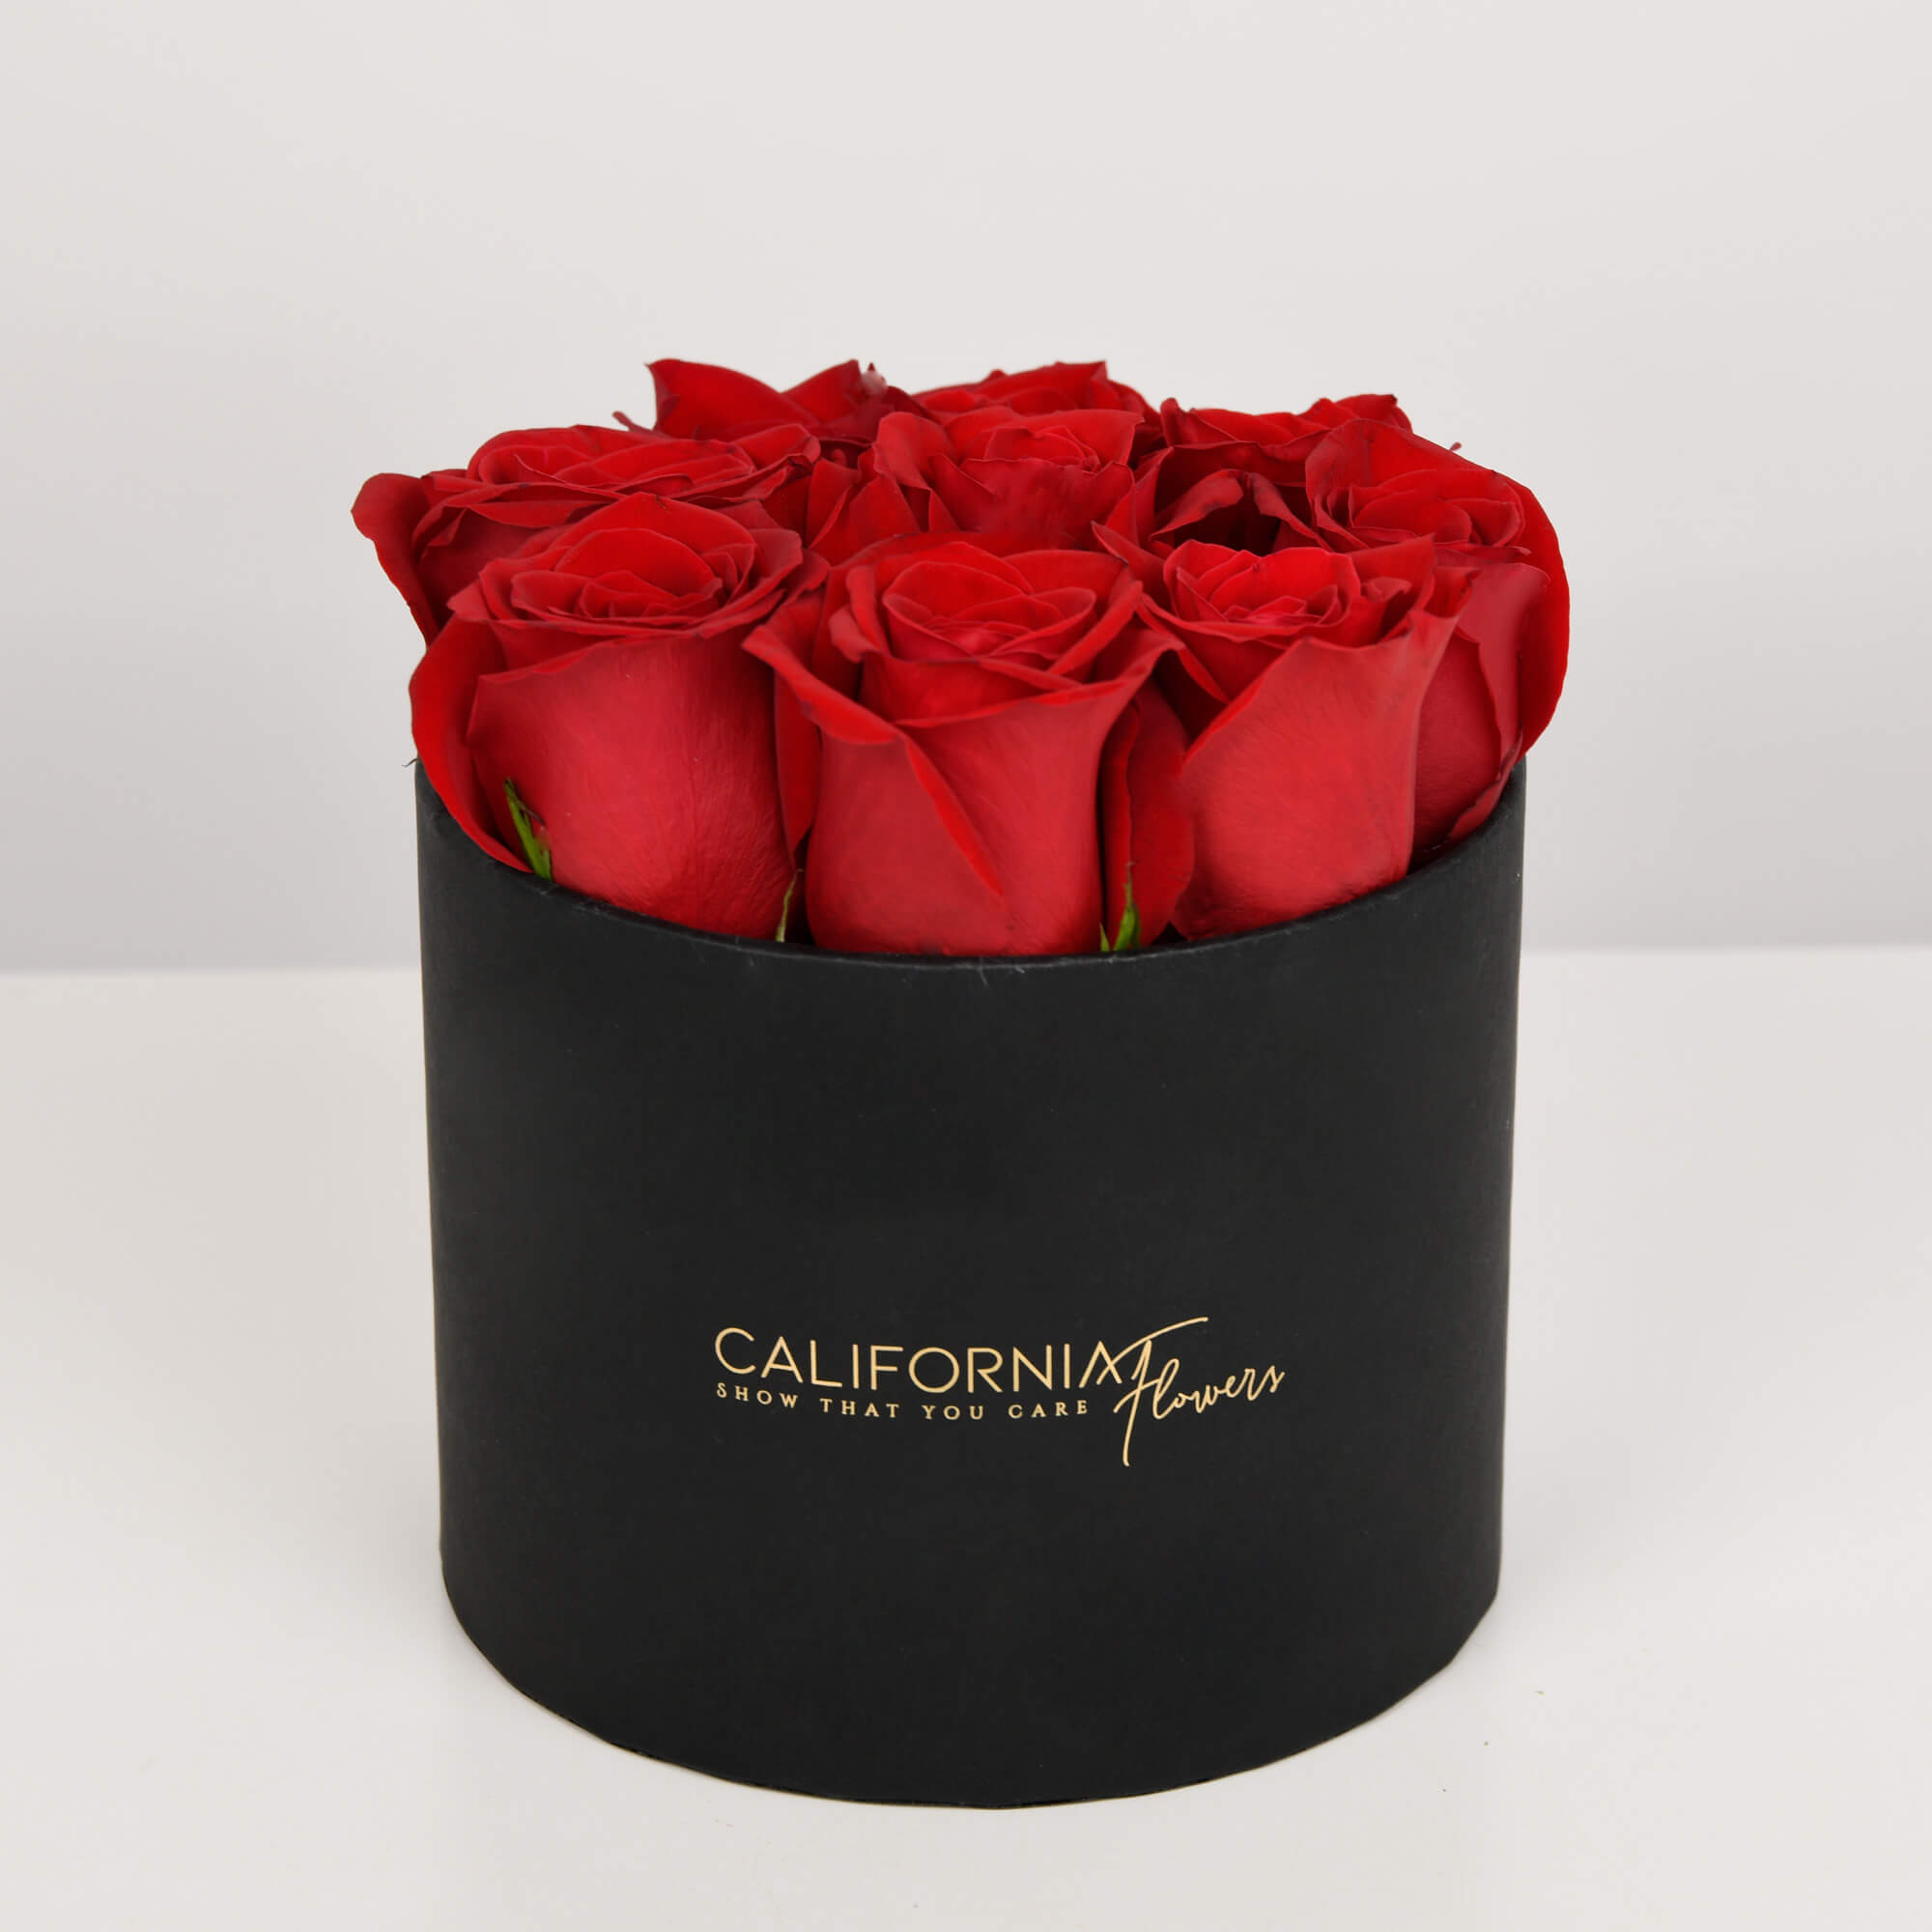 Cutie neagra cu 9 trandafiri rosii, 2